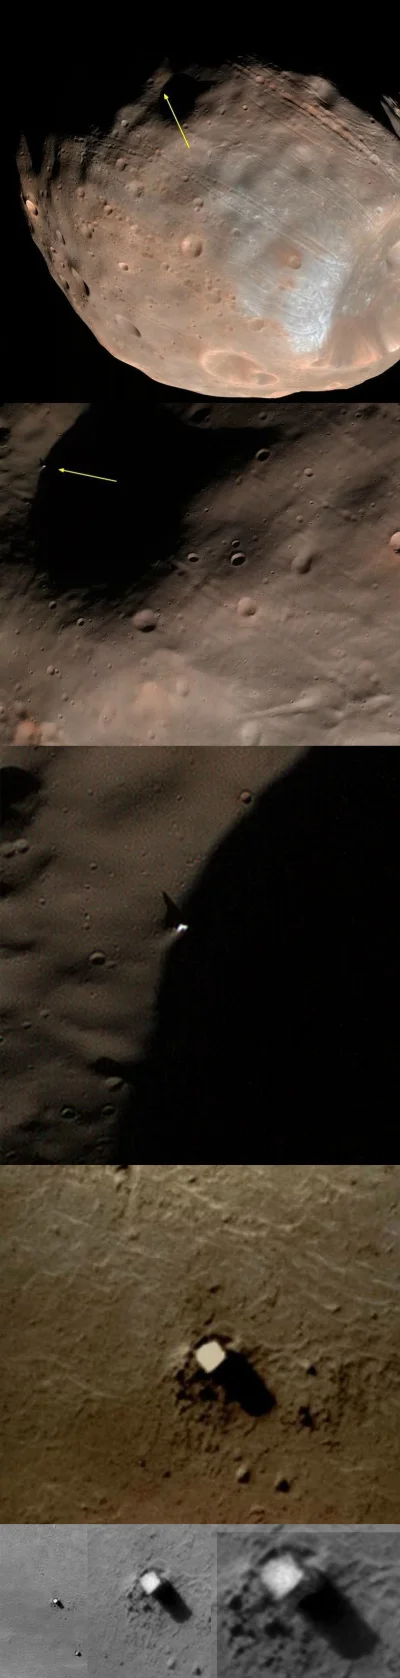 naczarak - Dzinwy monolit na fobosie

#kosmos #phobos #mars #fobos #monolit #obcy #ko...